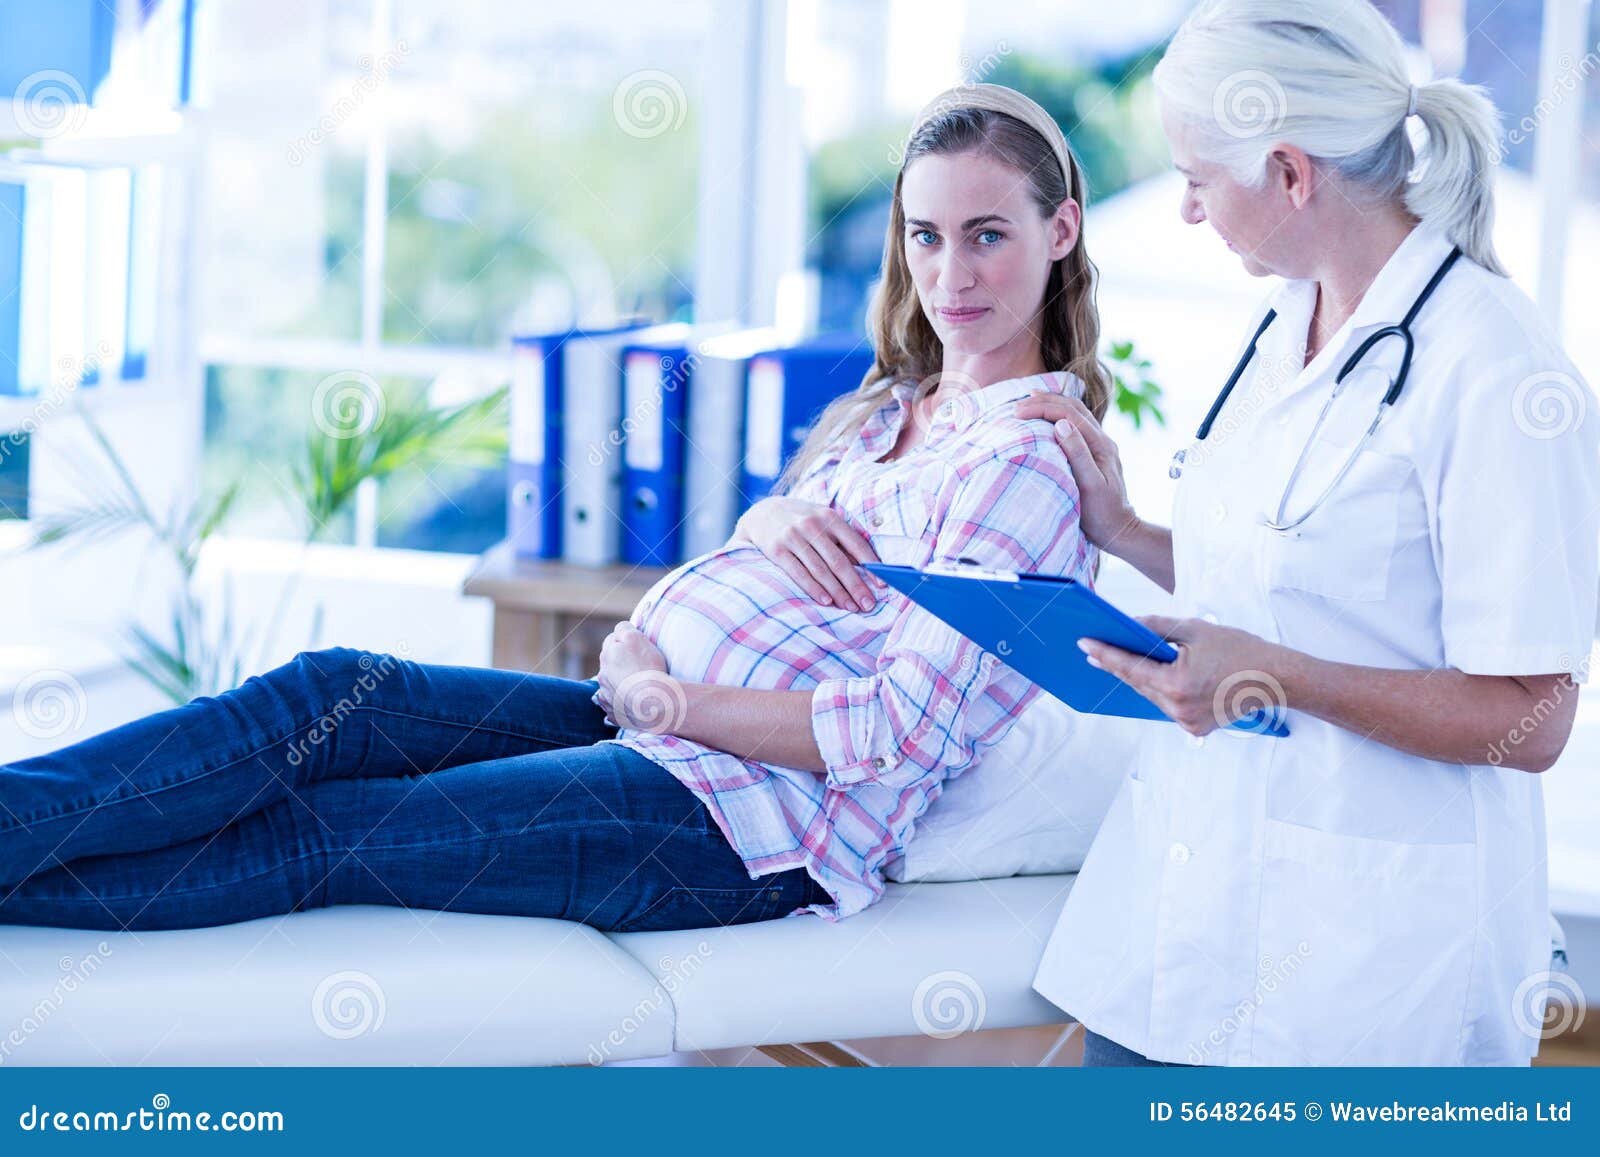 Врачи говорили беременной. Токтор беремине женский доктор. Беседа беременной с врачом.